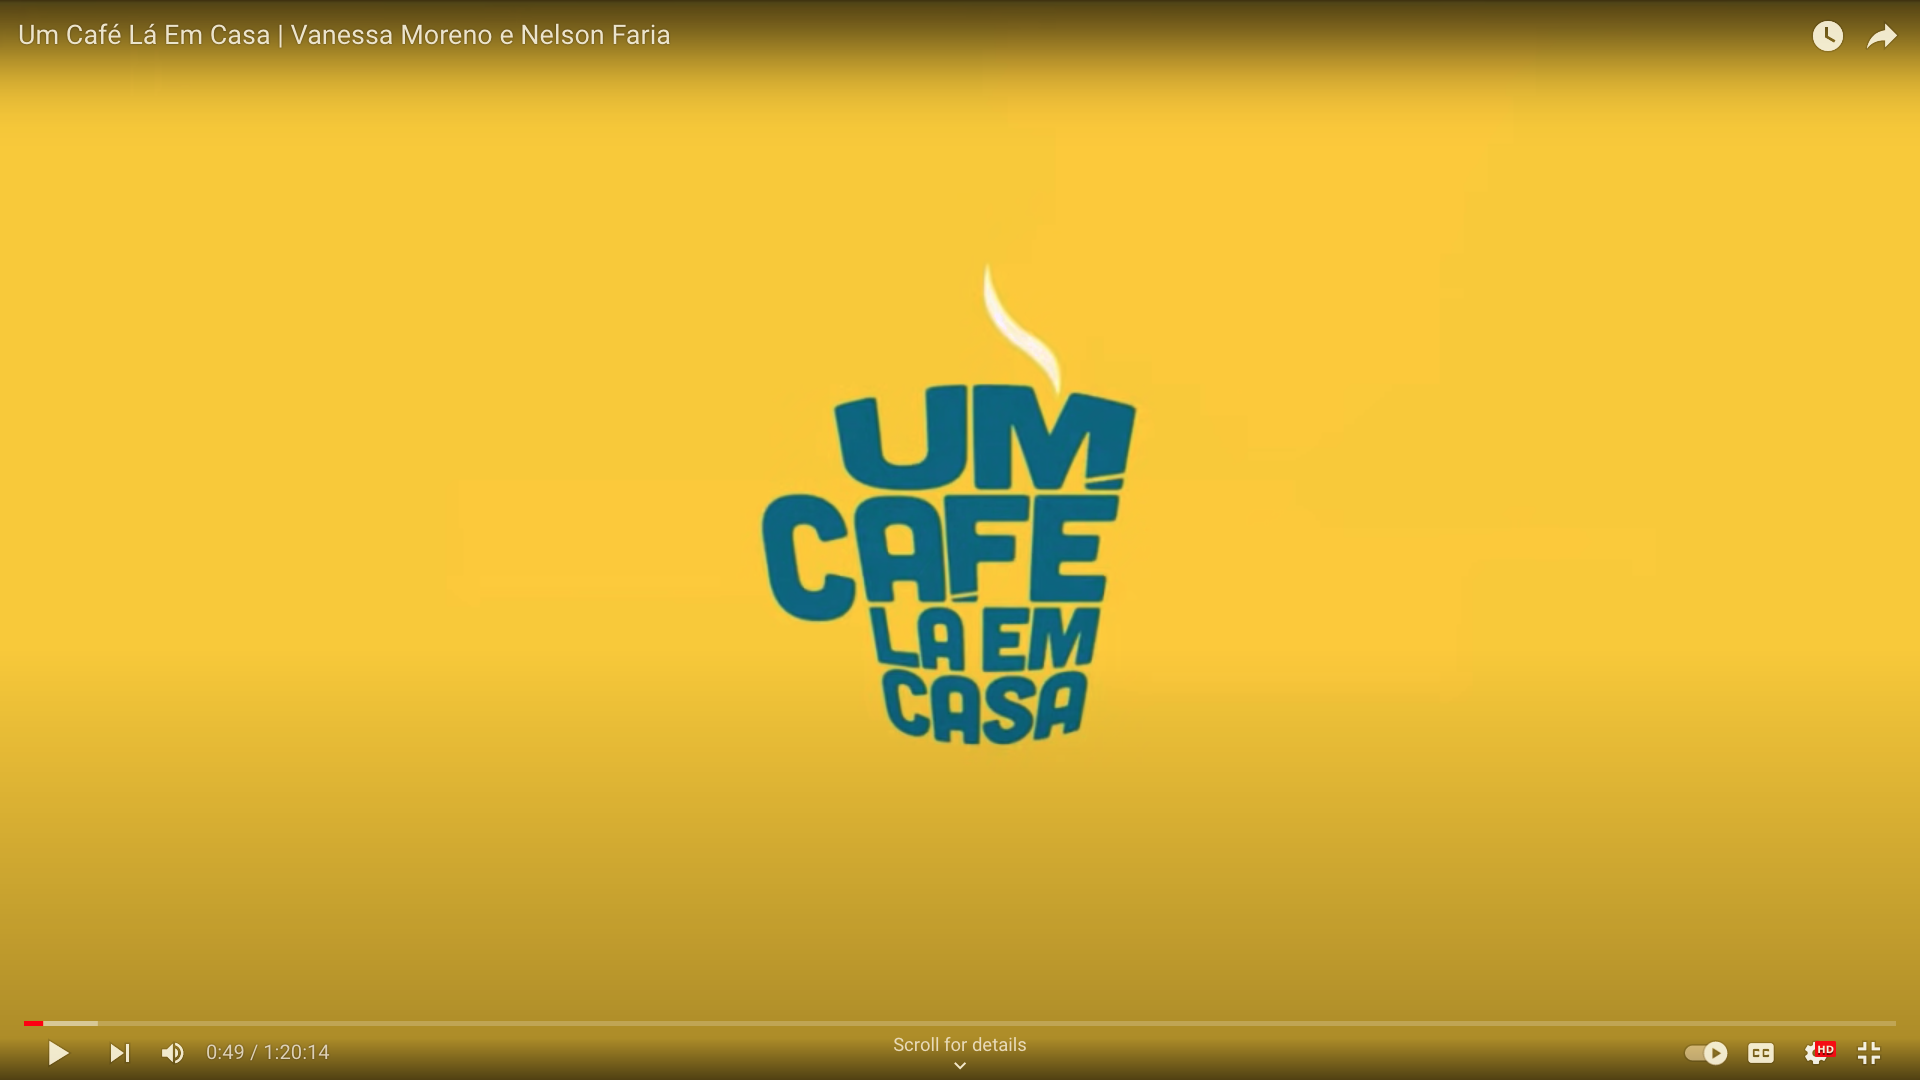 Mozart Mello | Making of | Um Café Lá Em Casa